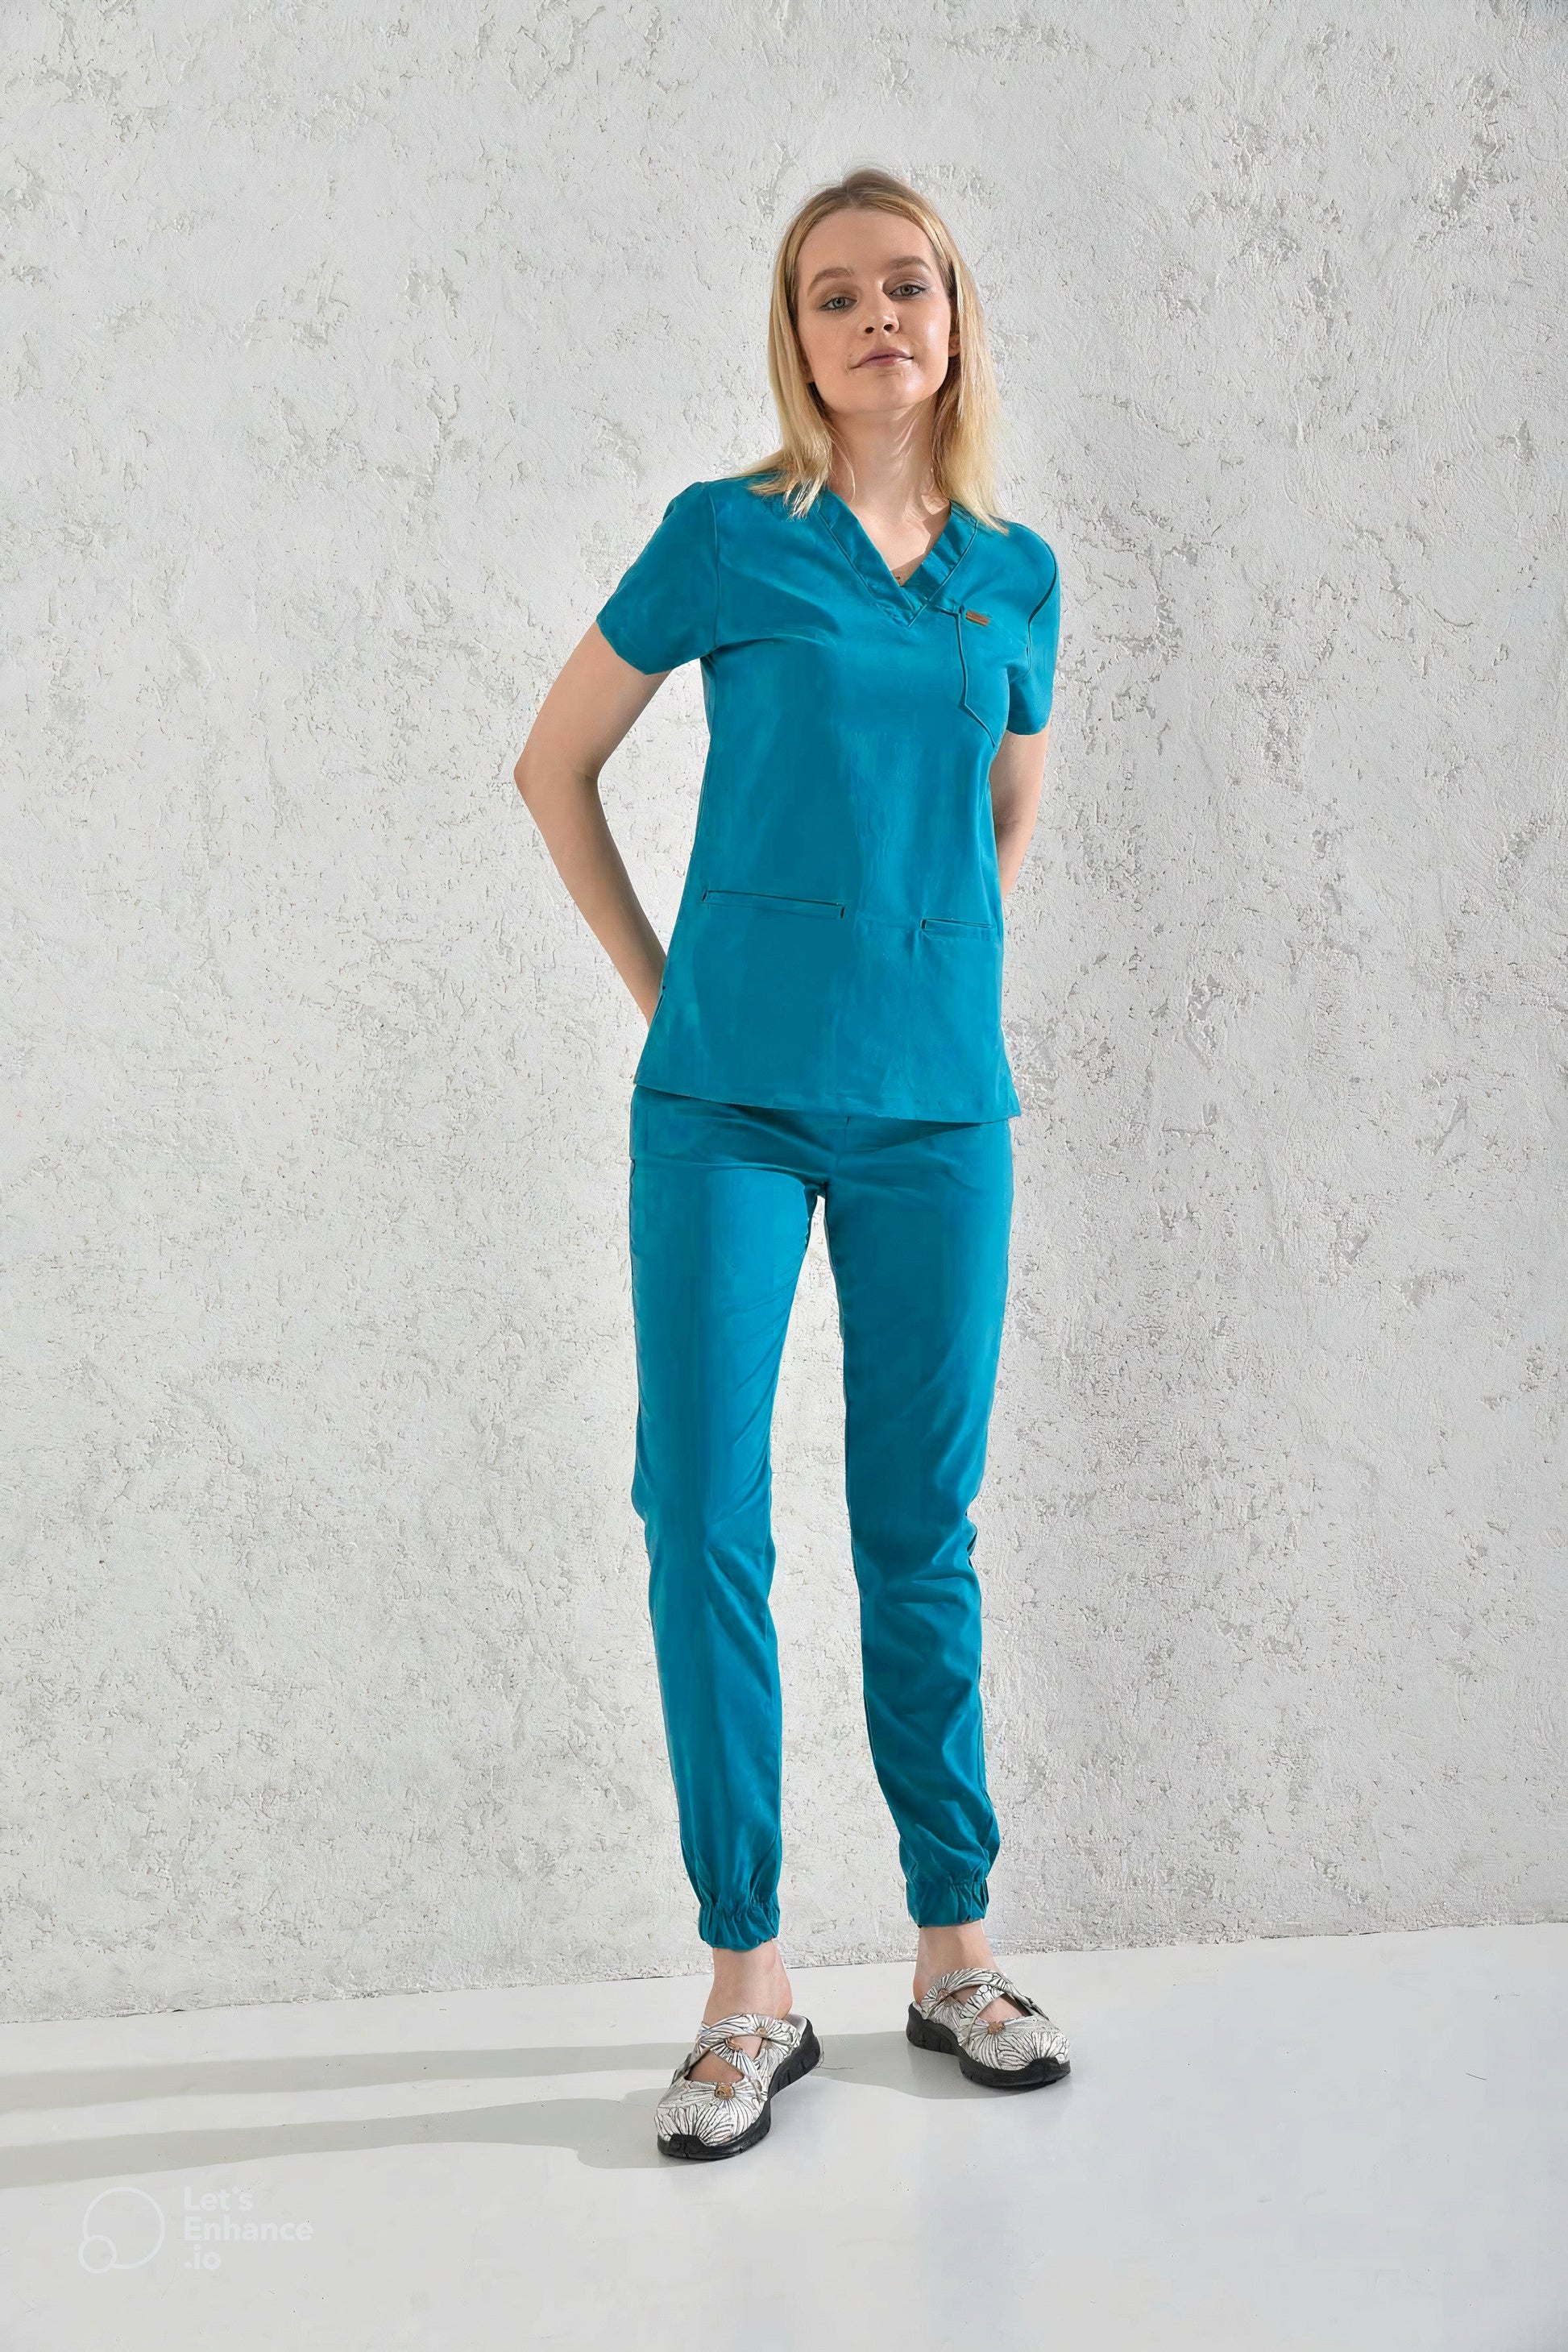 Une femme en uniforme médical turquoise de Slimfit - Tenue médicale - Bleu Cyan